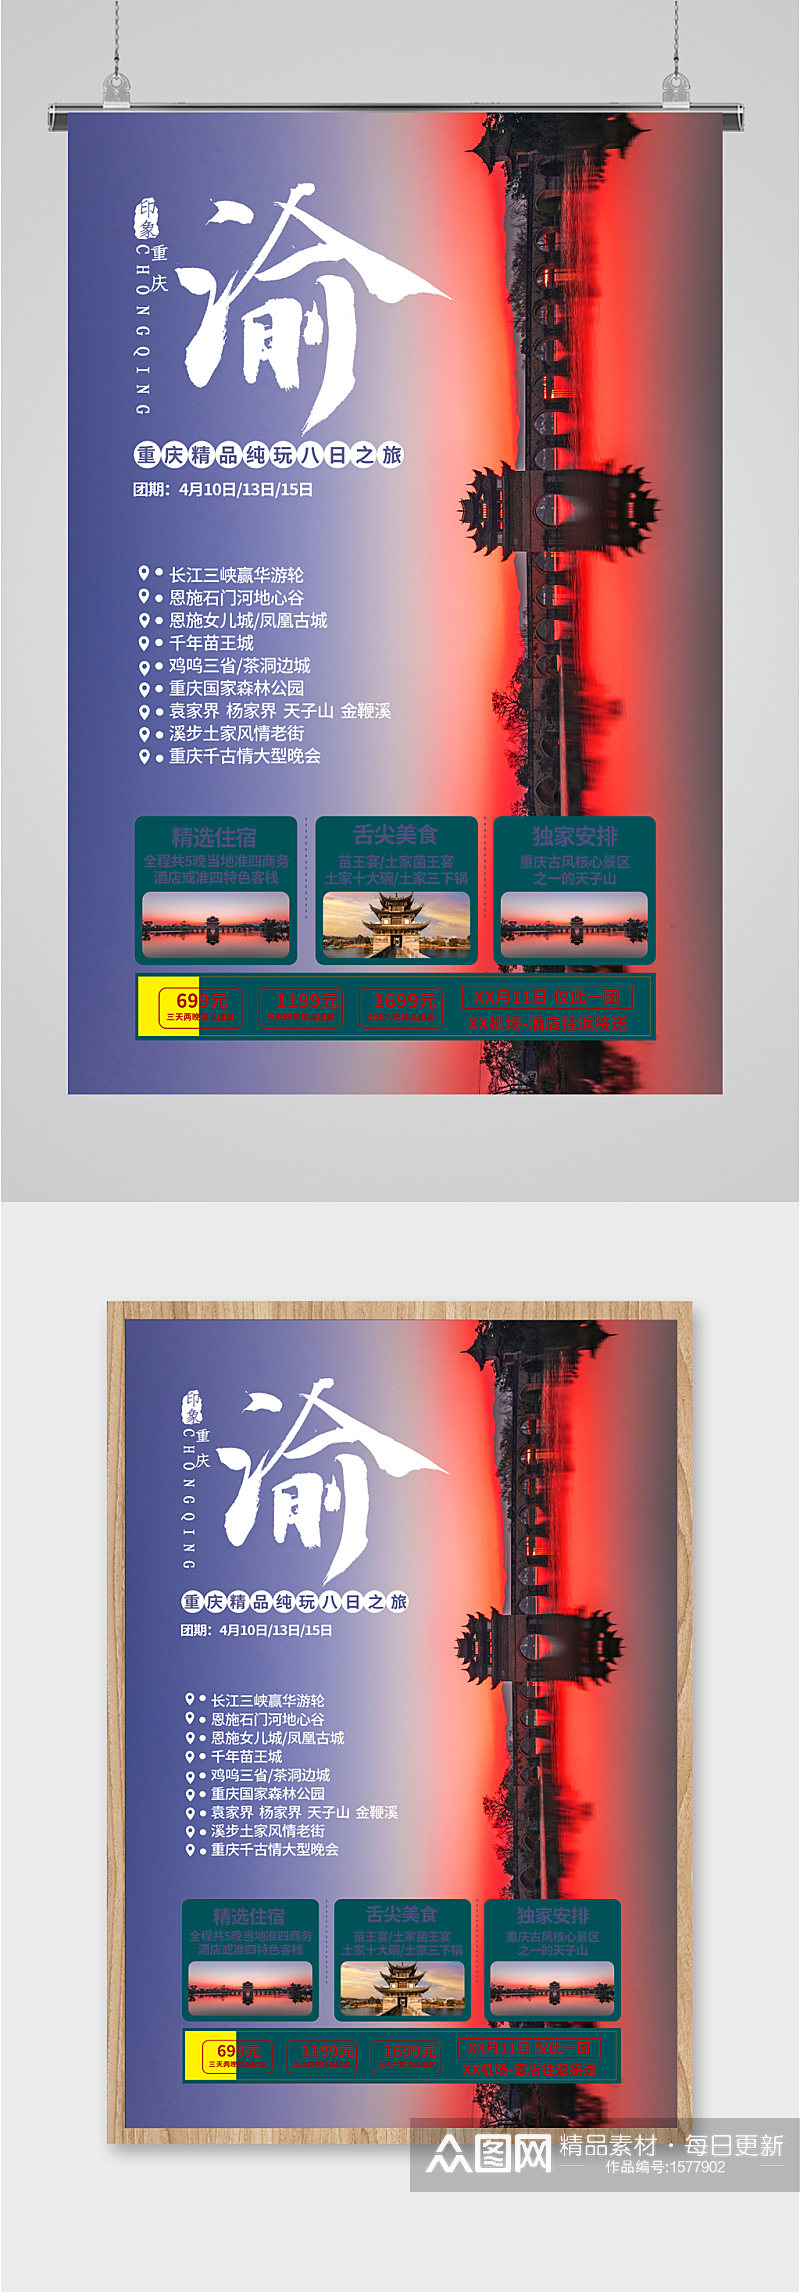 重庆8日游宣传海报素材